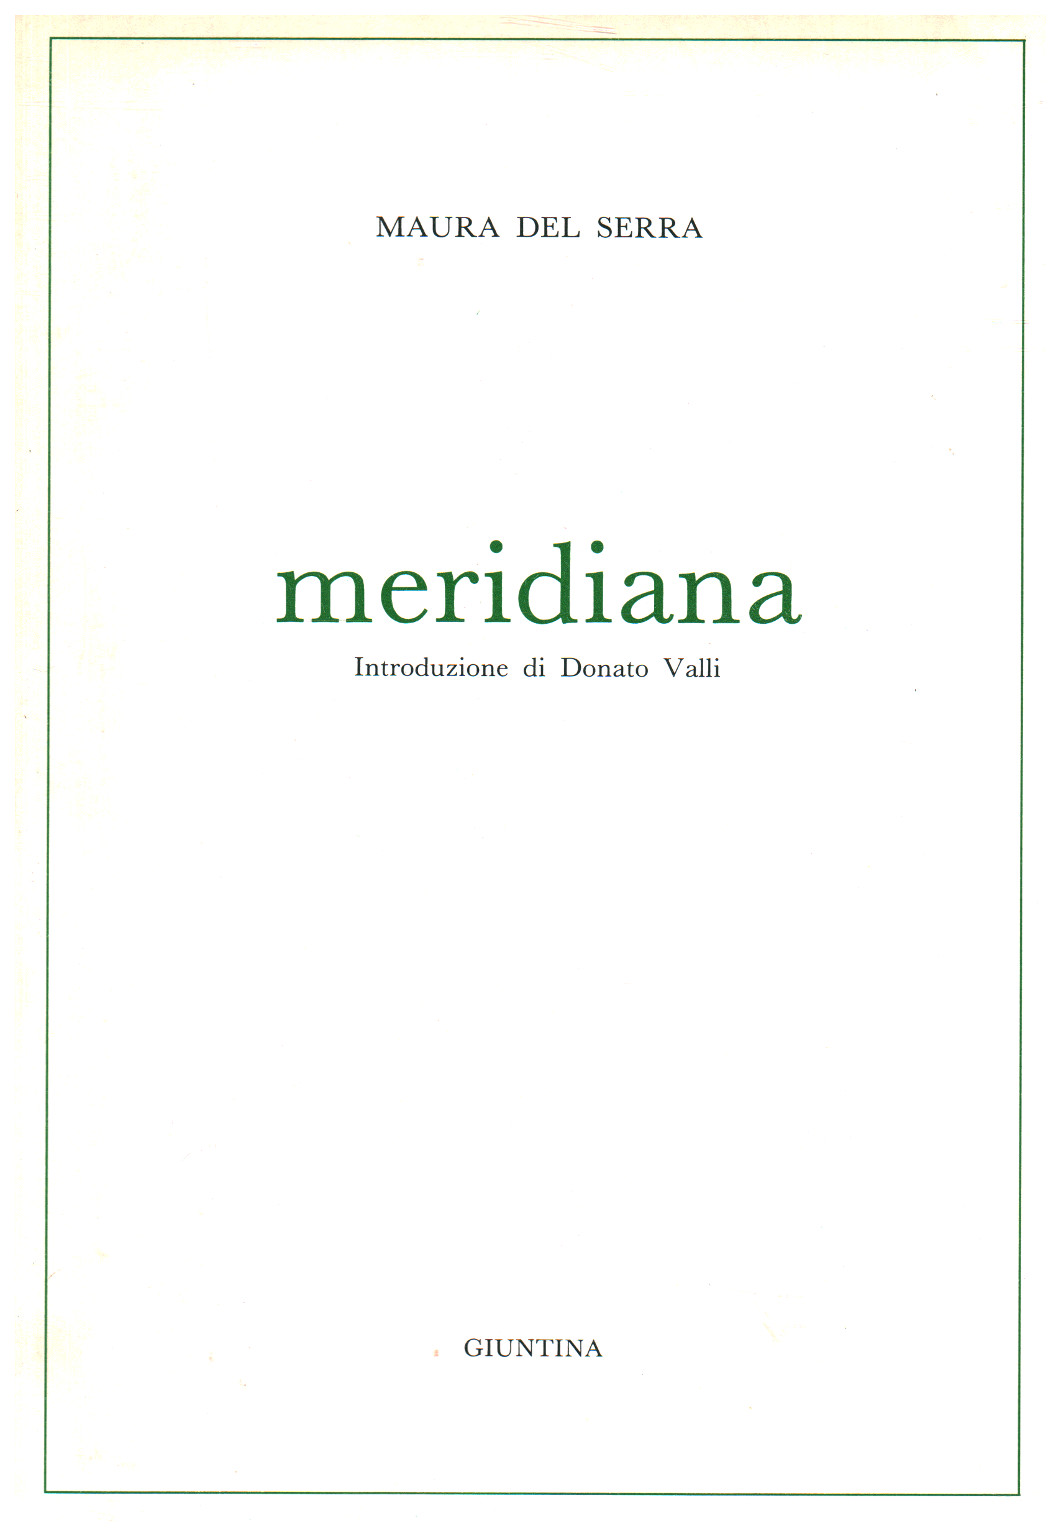 Meridiana s.a.